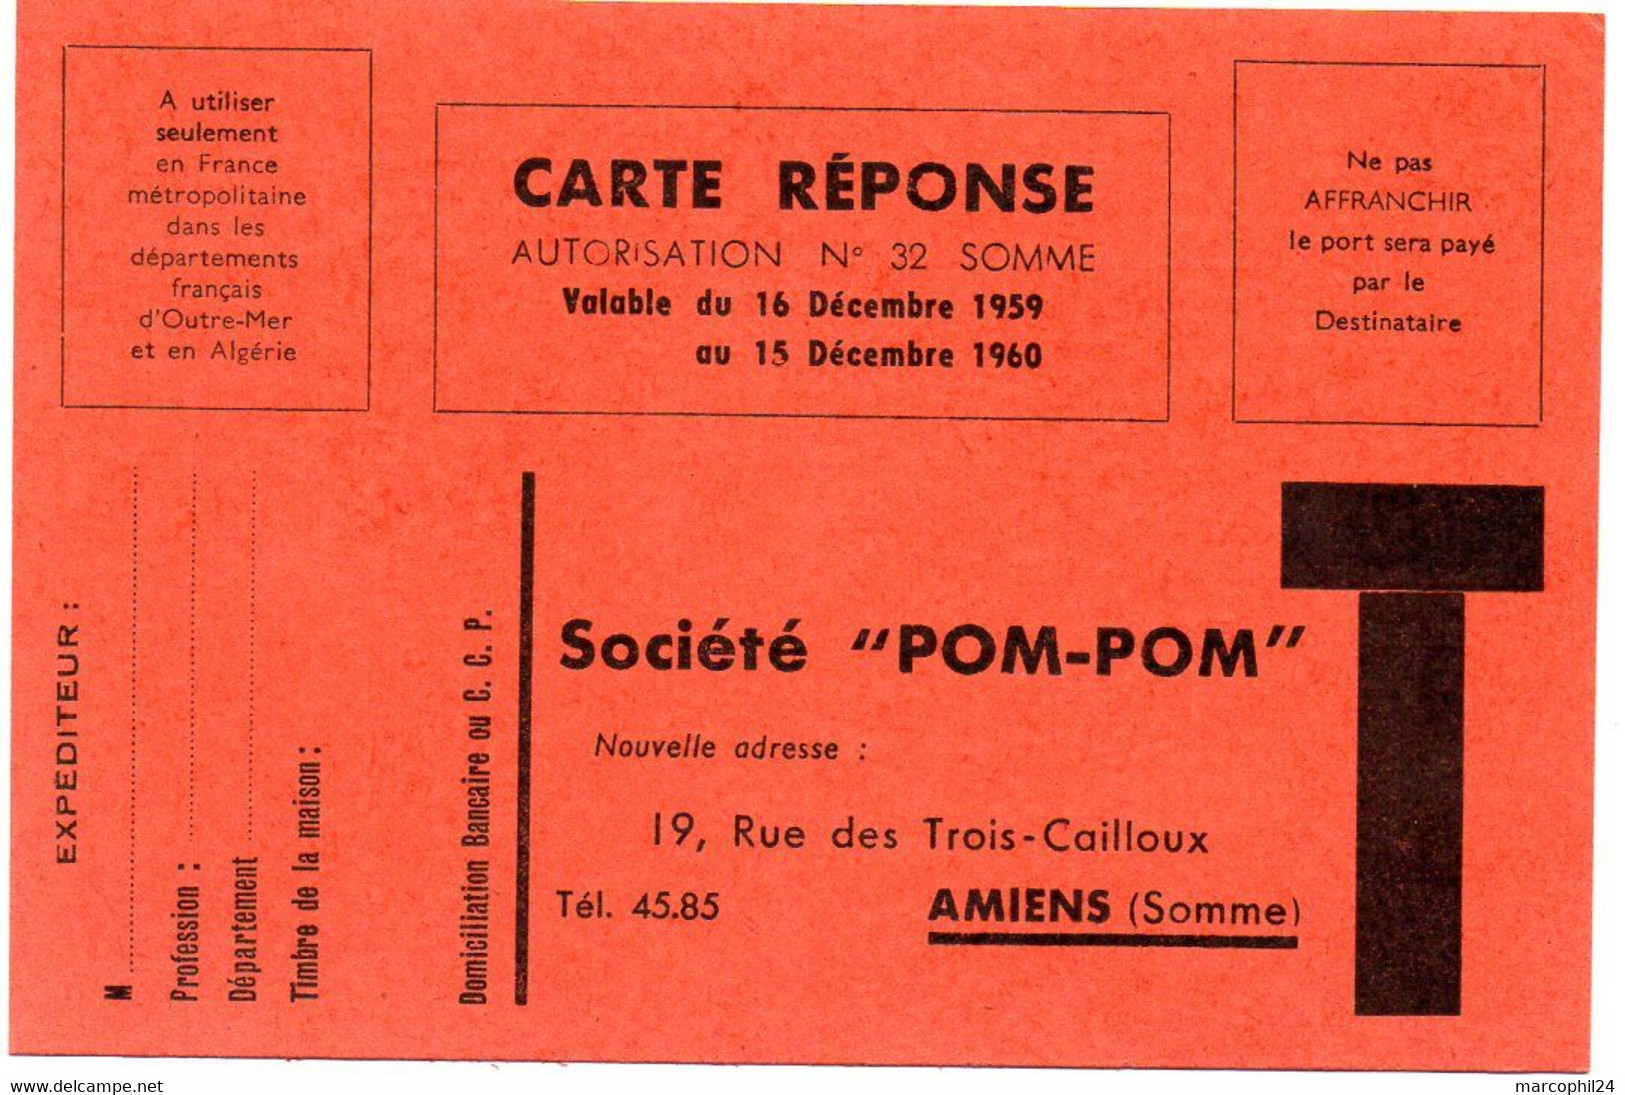 SOMME - Dépt N° 80 = AMIENS 1960 = CARTE REPONSE T  ' Société POM-POM' - Cartes/Enveloppes Réponse T